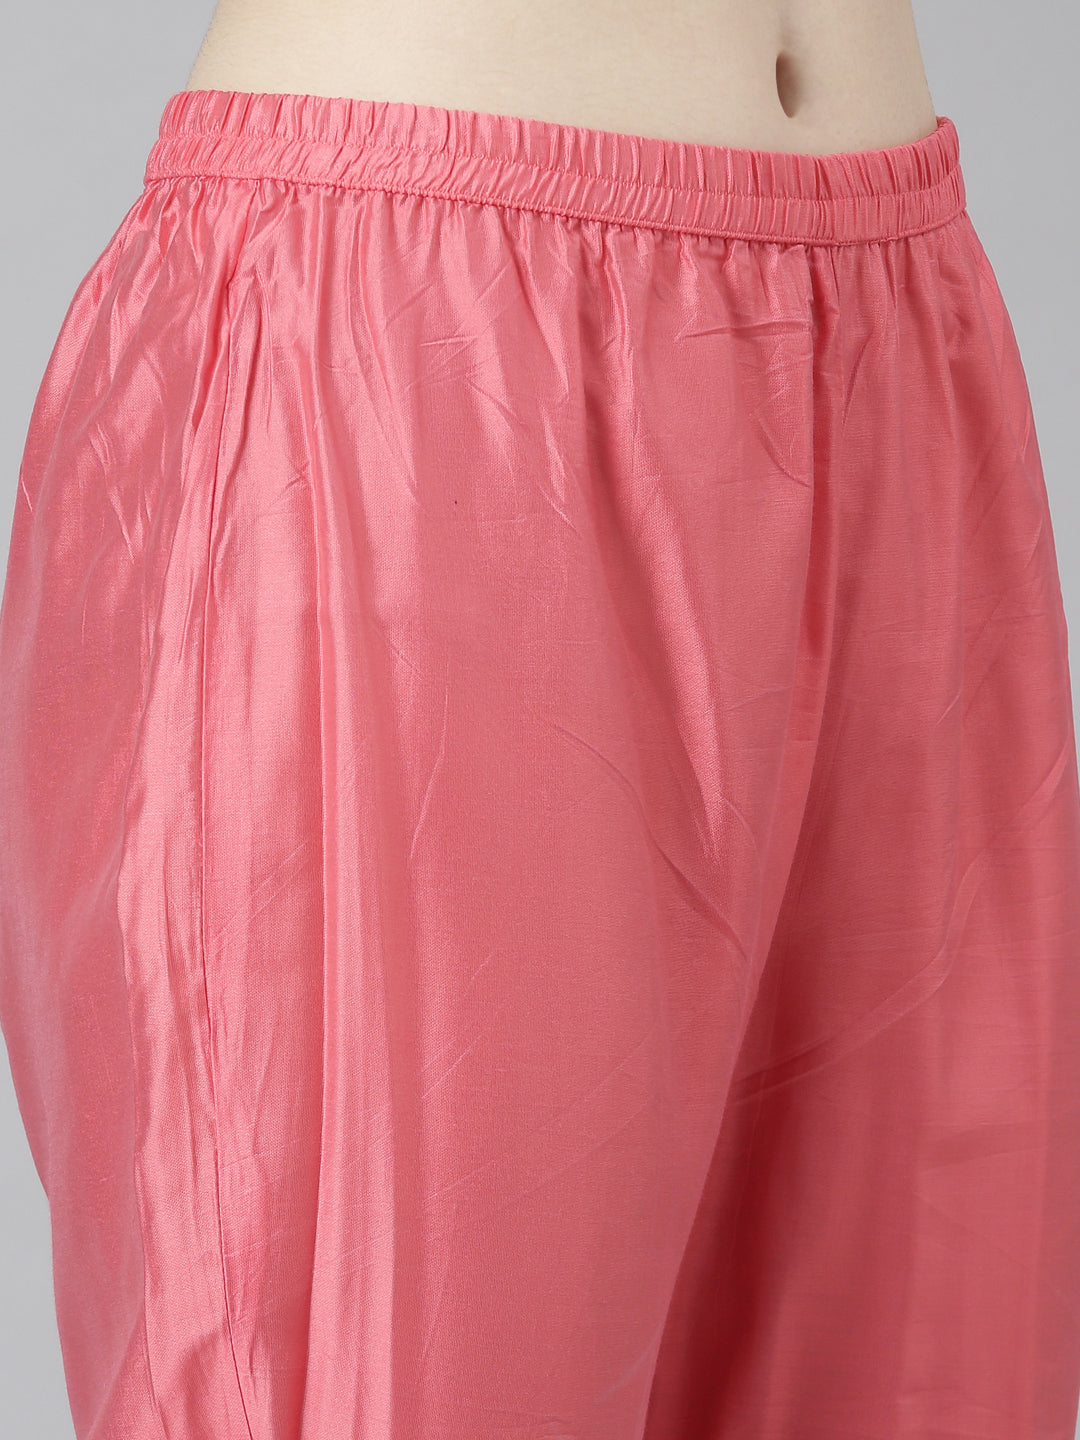 Neeru's Pink Regular Straight Chevron Kurta And Trousers With Dupatta